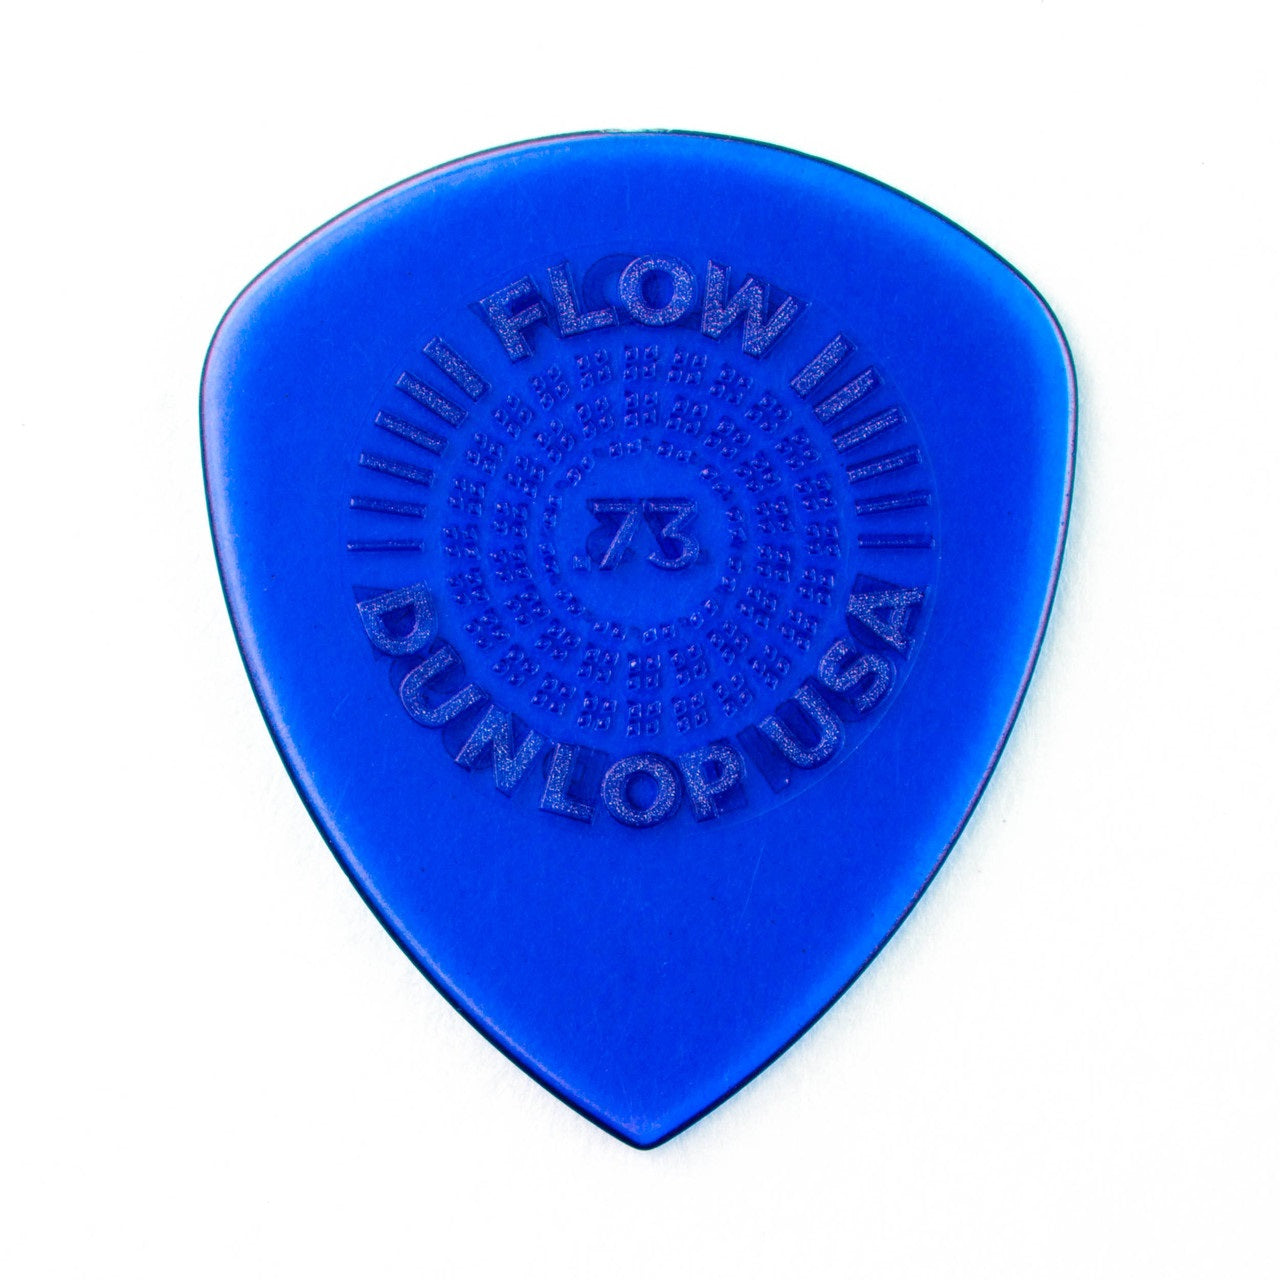 Dunlop Flow 0.73mm Standard Grip Guitar Pick Pack of 6